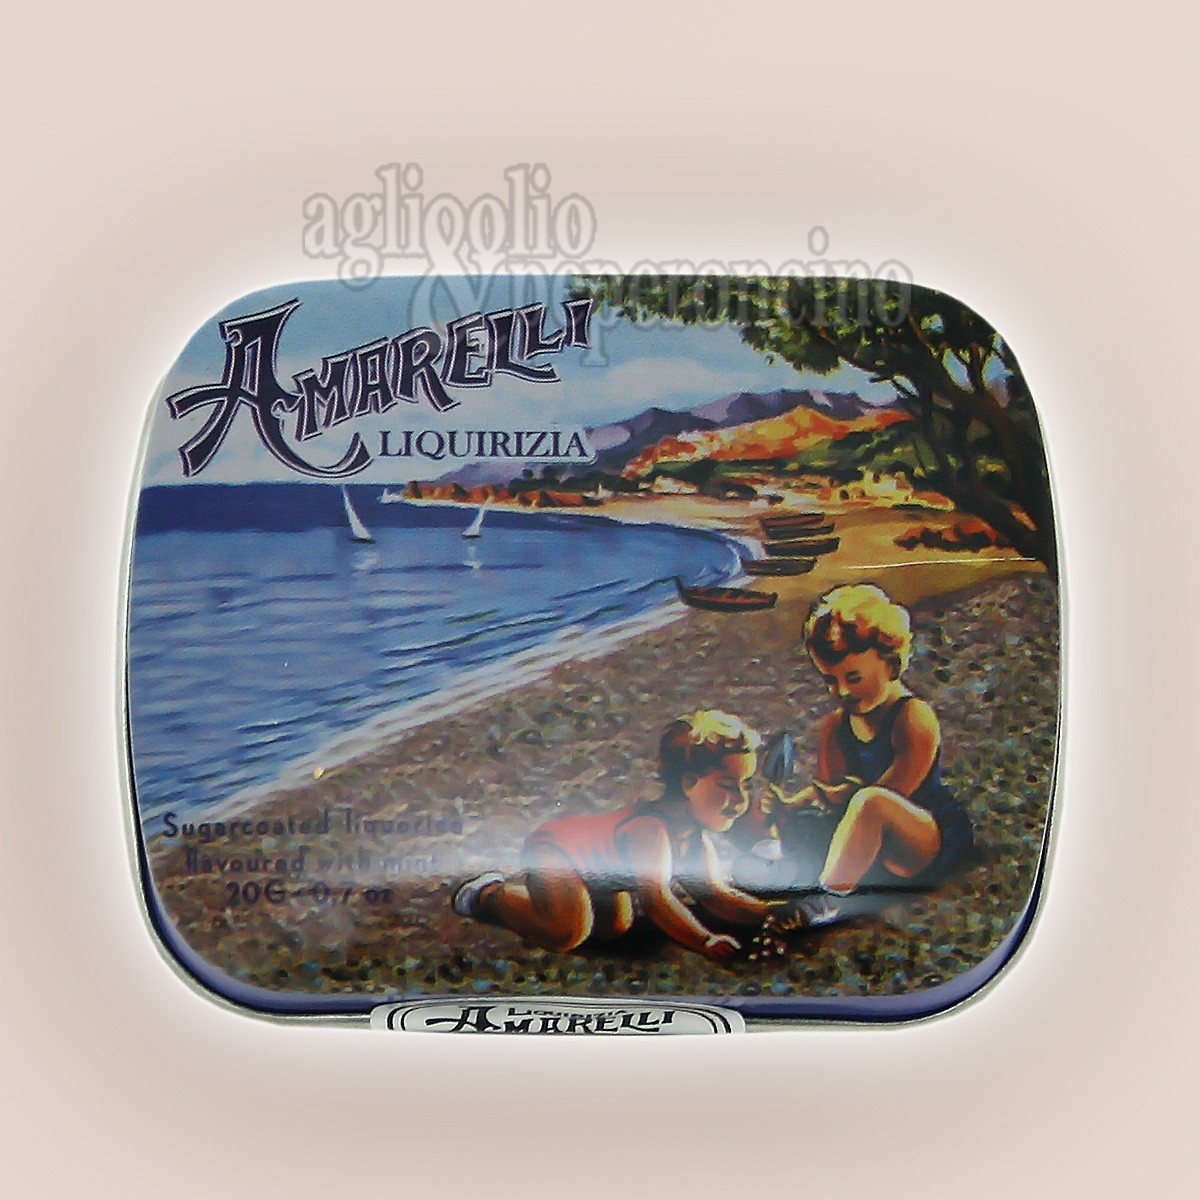 Bianconeri Amarelli Beach - Confetti di liquirizia calabrese alla menta in lattina da 40g